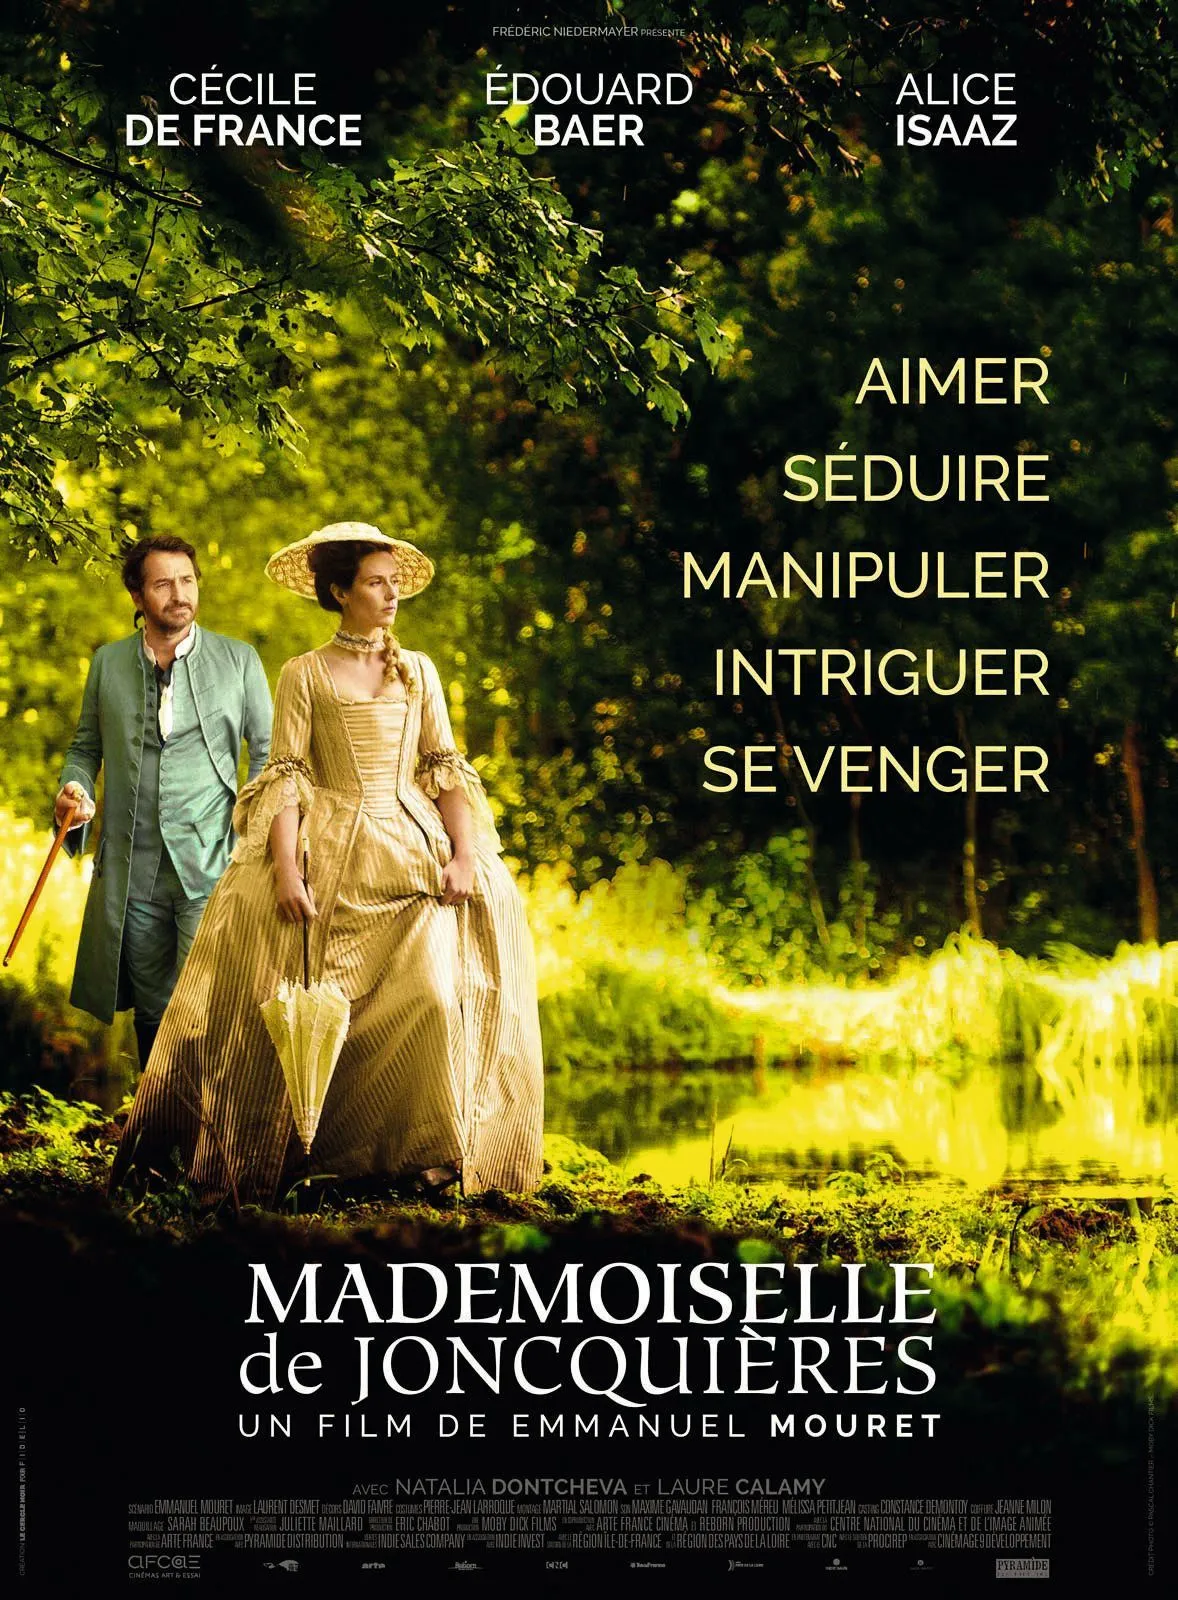 Emmanuel Mouret Mademoiselle de Joncquières